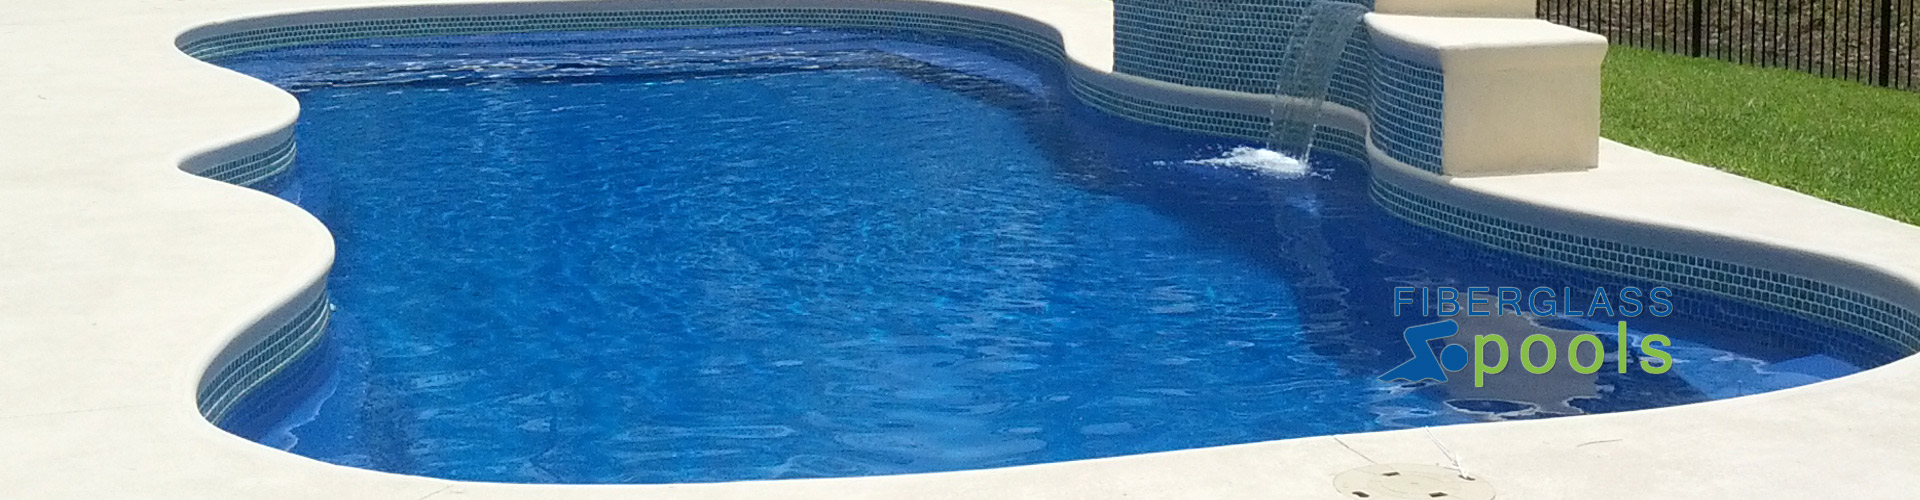 coral-sea-fiberglass-swimming-pool-with-concrete-in-florida